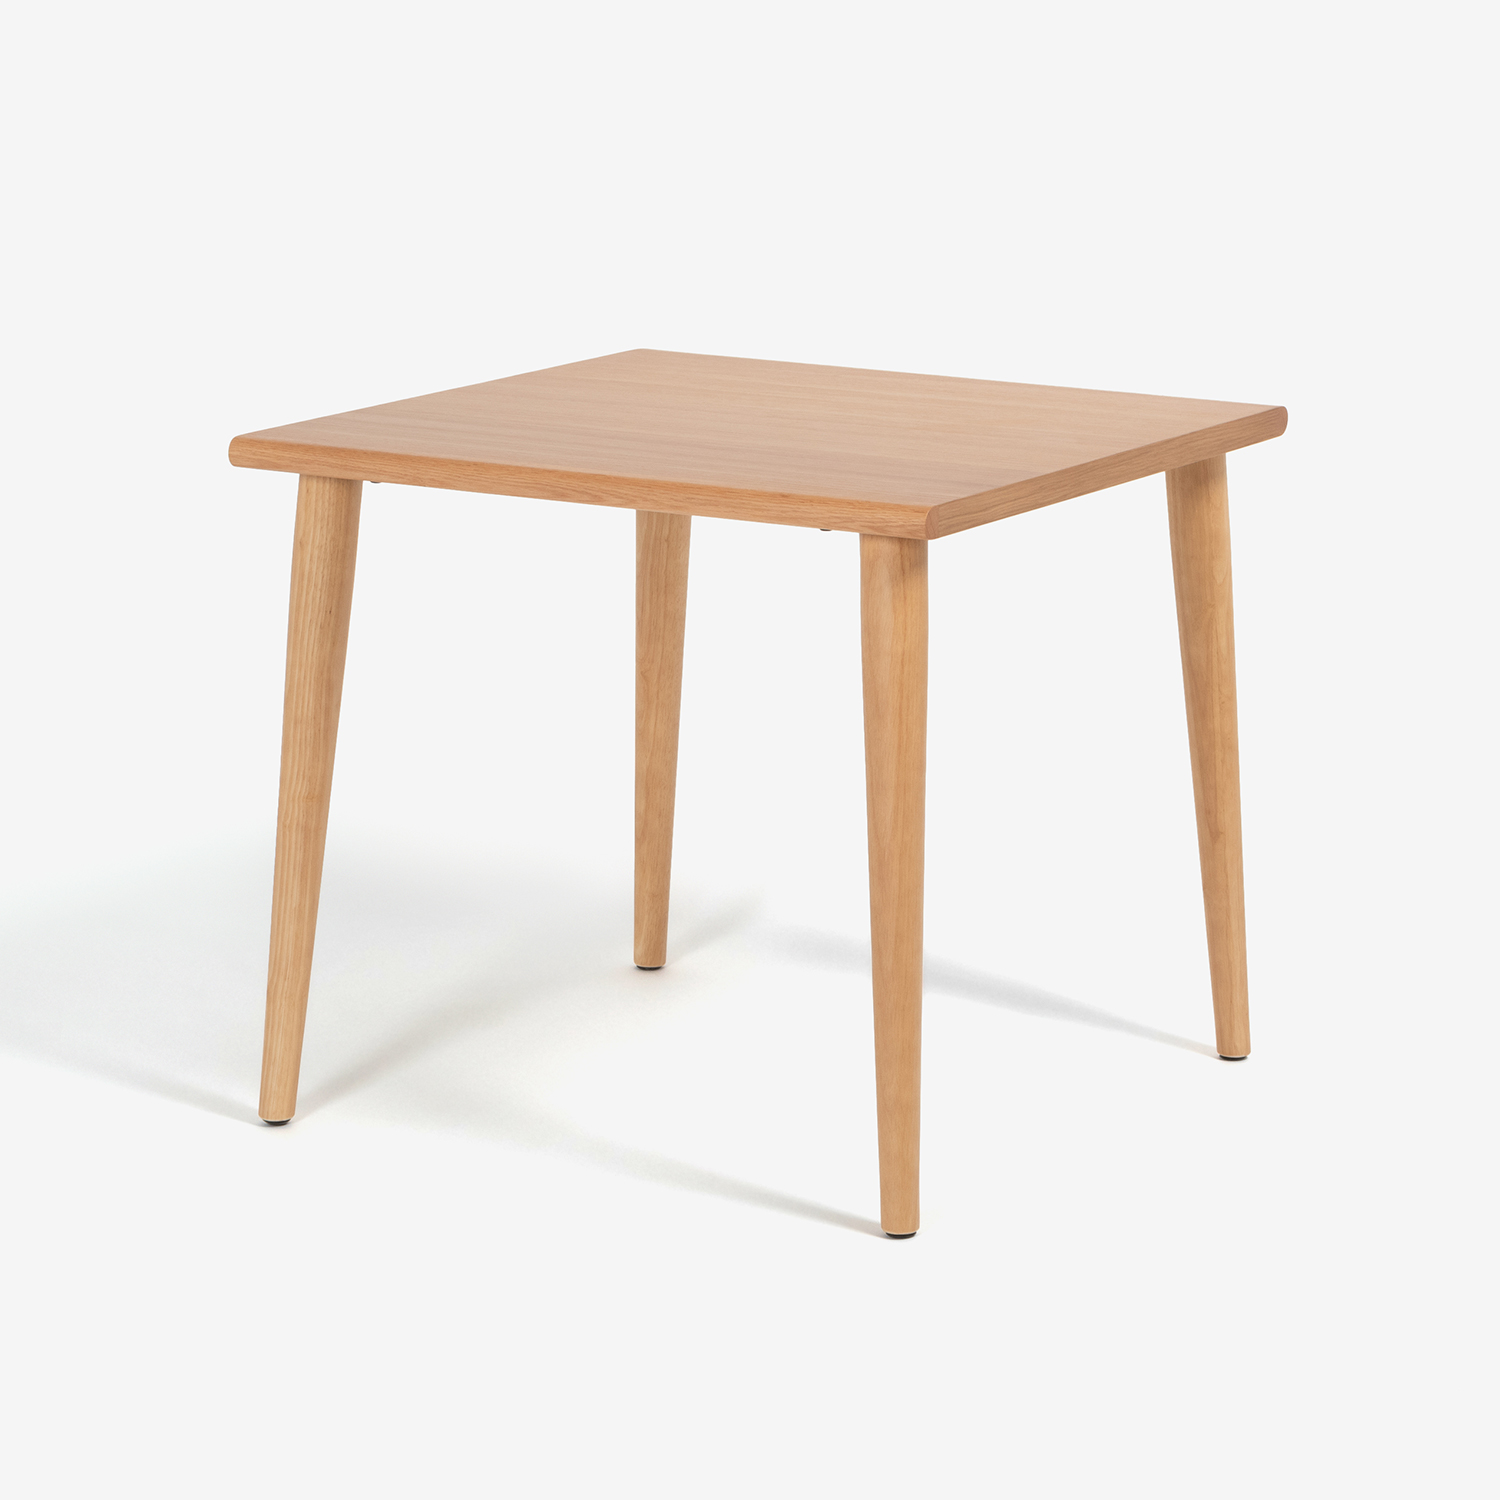 ダイニングテーブル「ユノ3」幅80cm レッドオーク材 ホワイトオーク色 丸脚 | 大塚家具 ONLINE SHOP